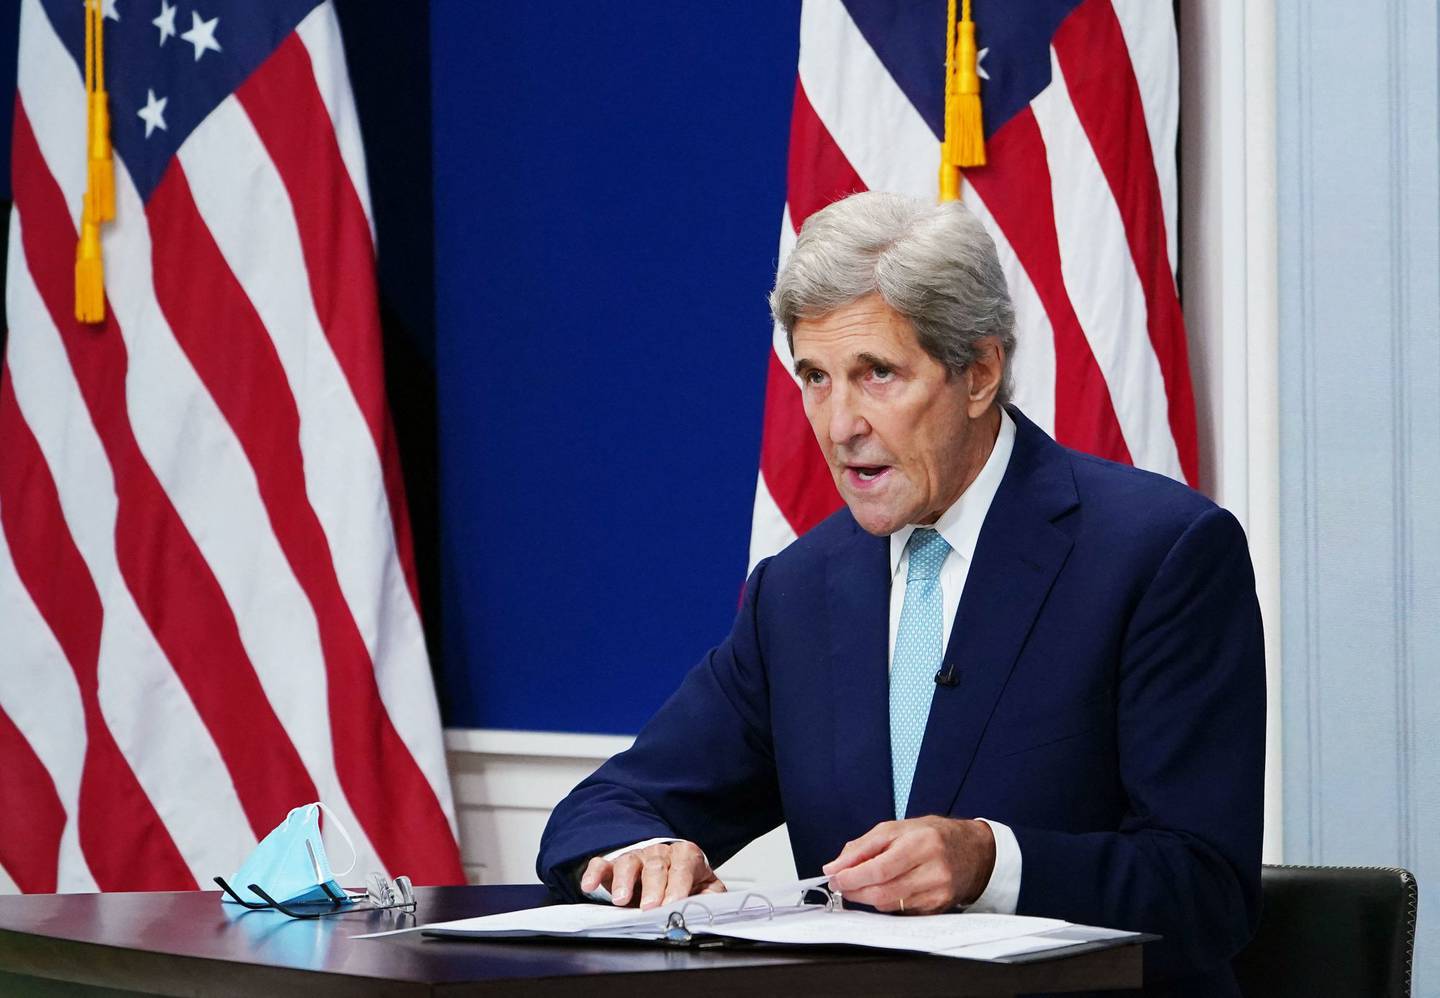 John Kerry er USAs klimautsending og tidligere utenriksminister. Han har lang erfaring med klimadiplomati, og vil være sentral i Glasgow.